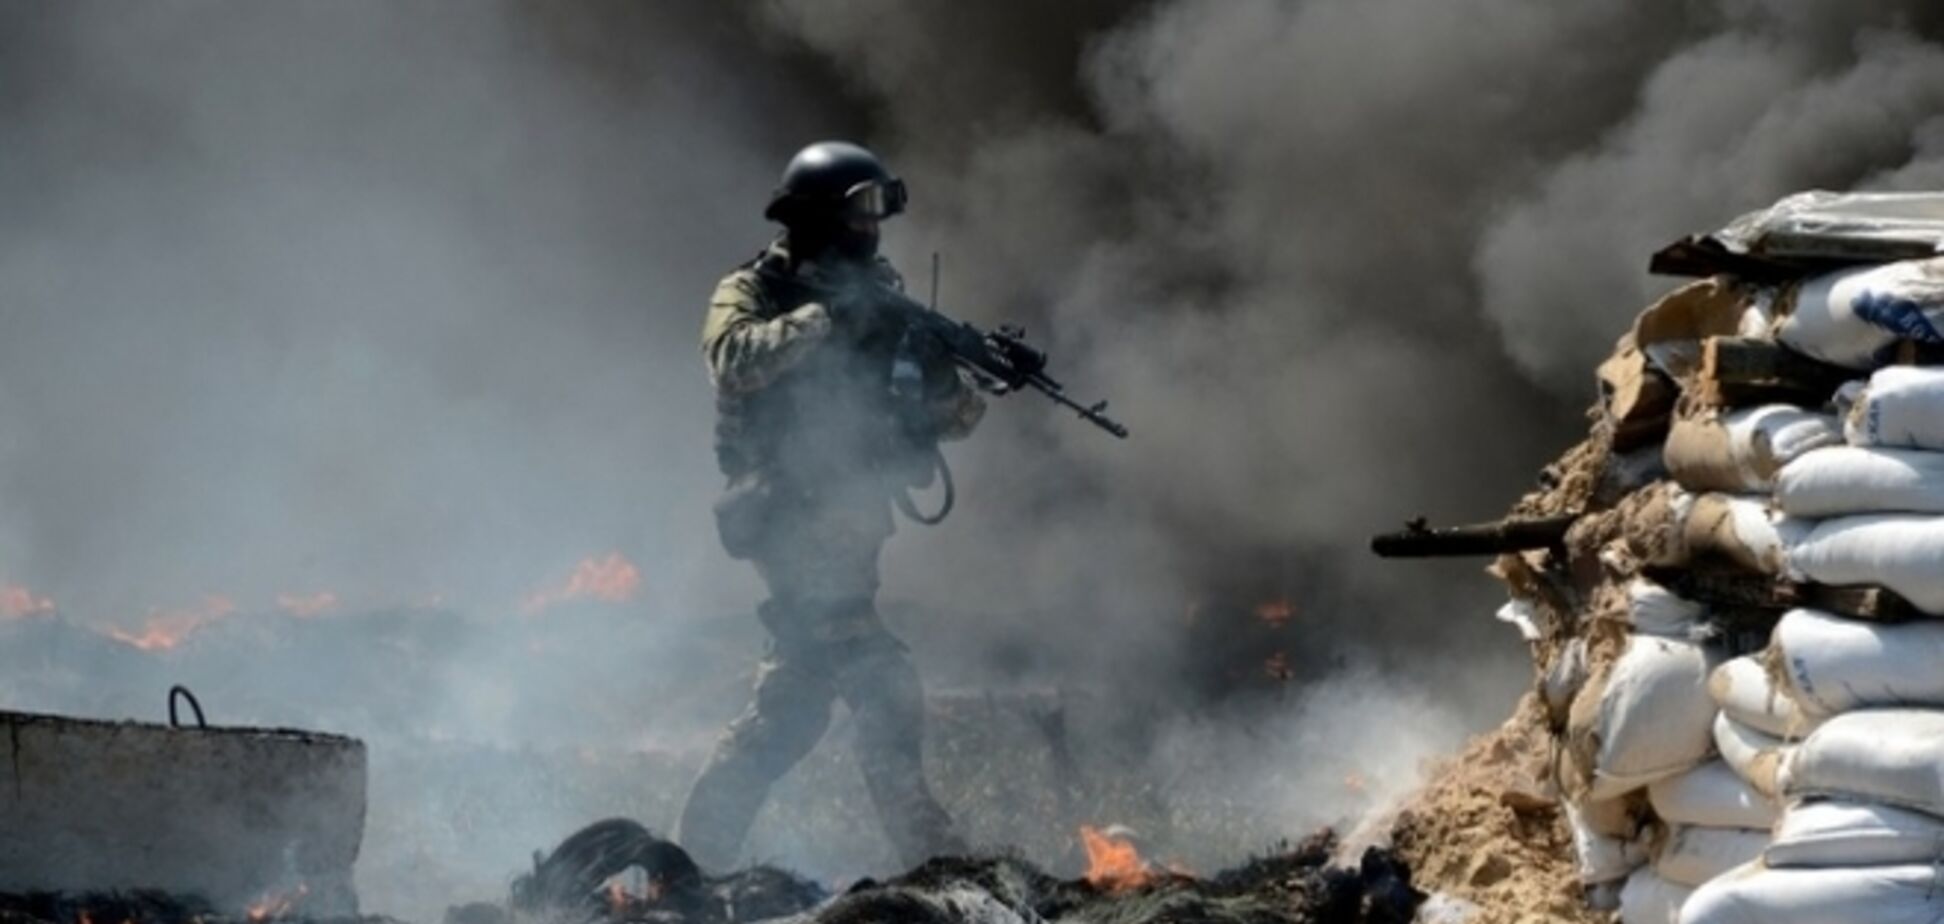 Сьогодні Росія може визнати свою участь у війні проти України - військовий експерт